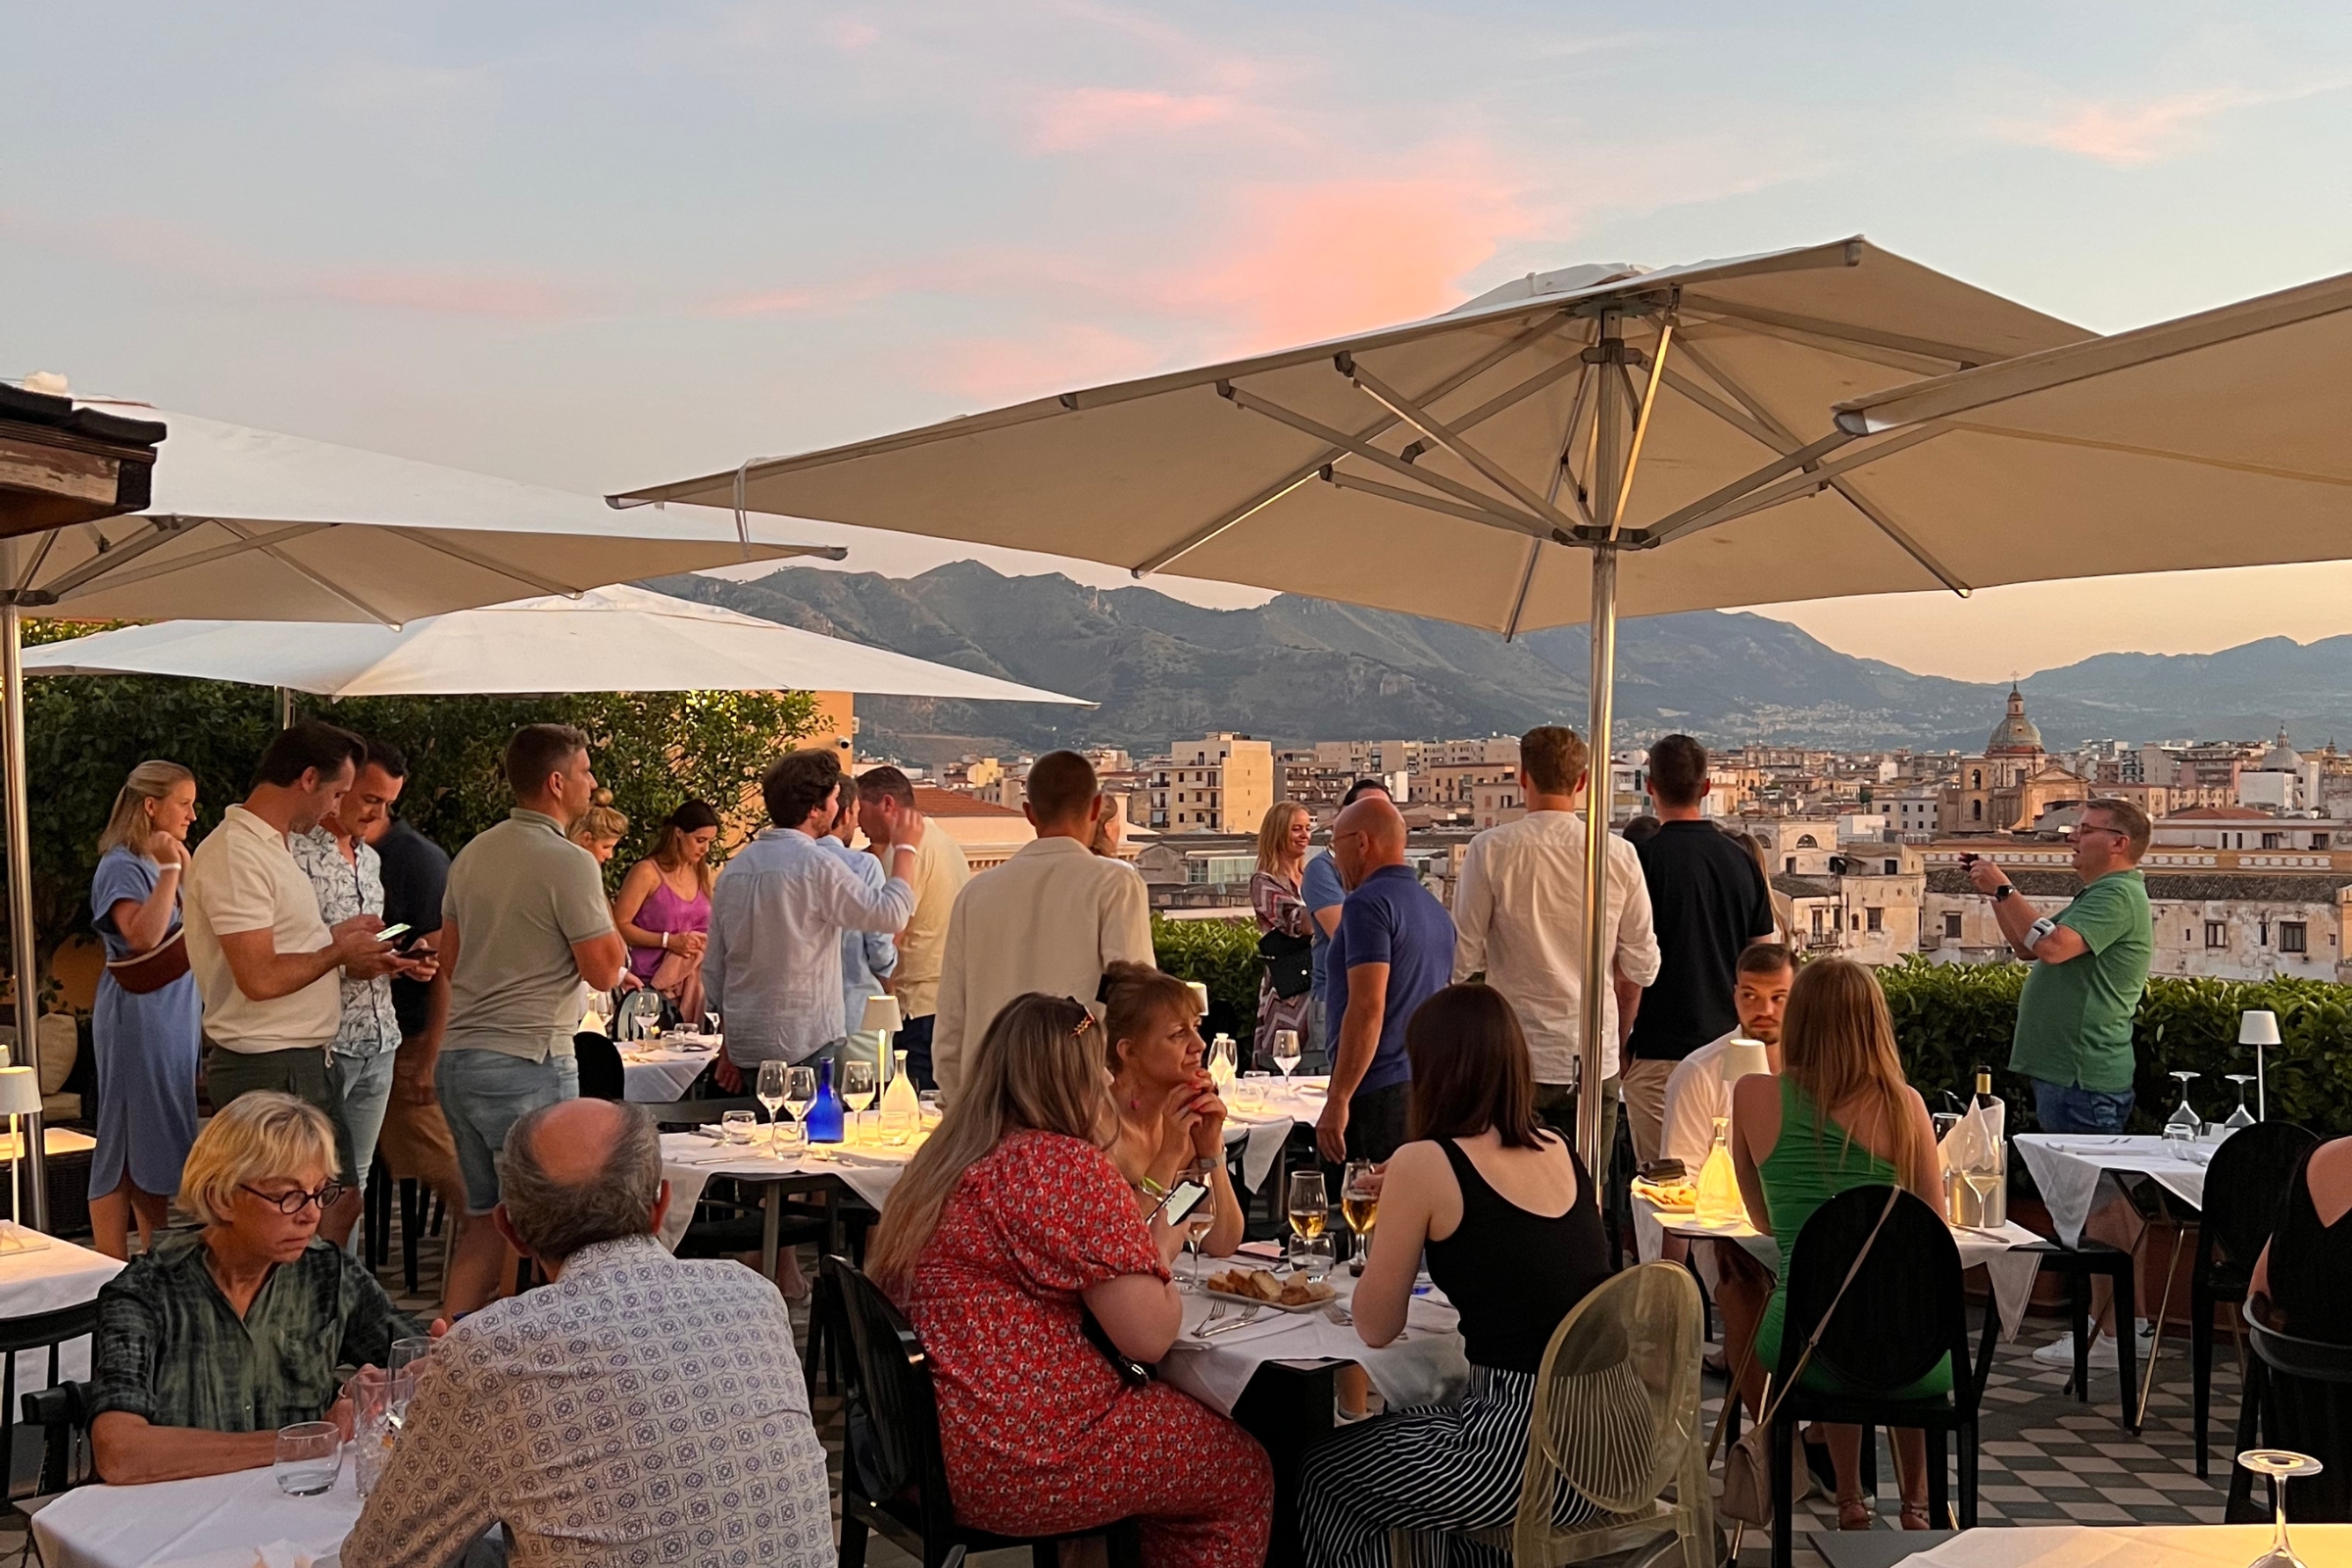 Ambasciatori Hotel Palermo: La tua cena con vista da sogno